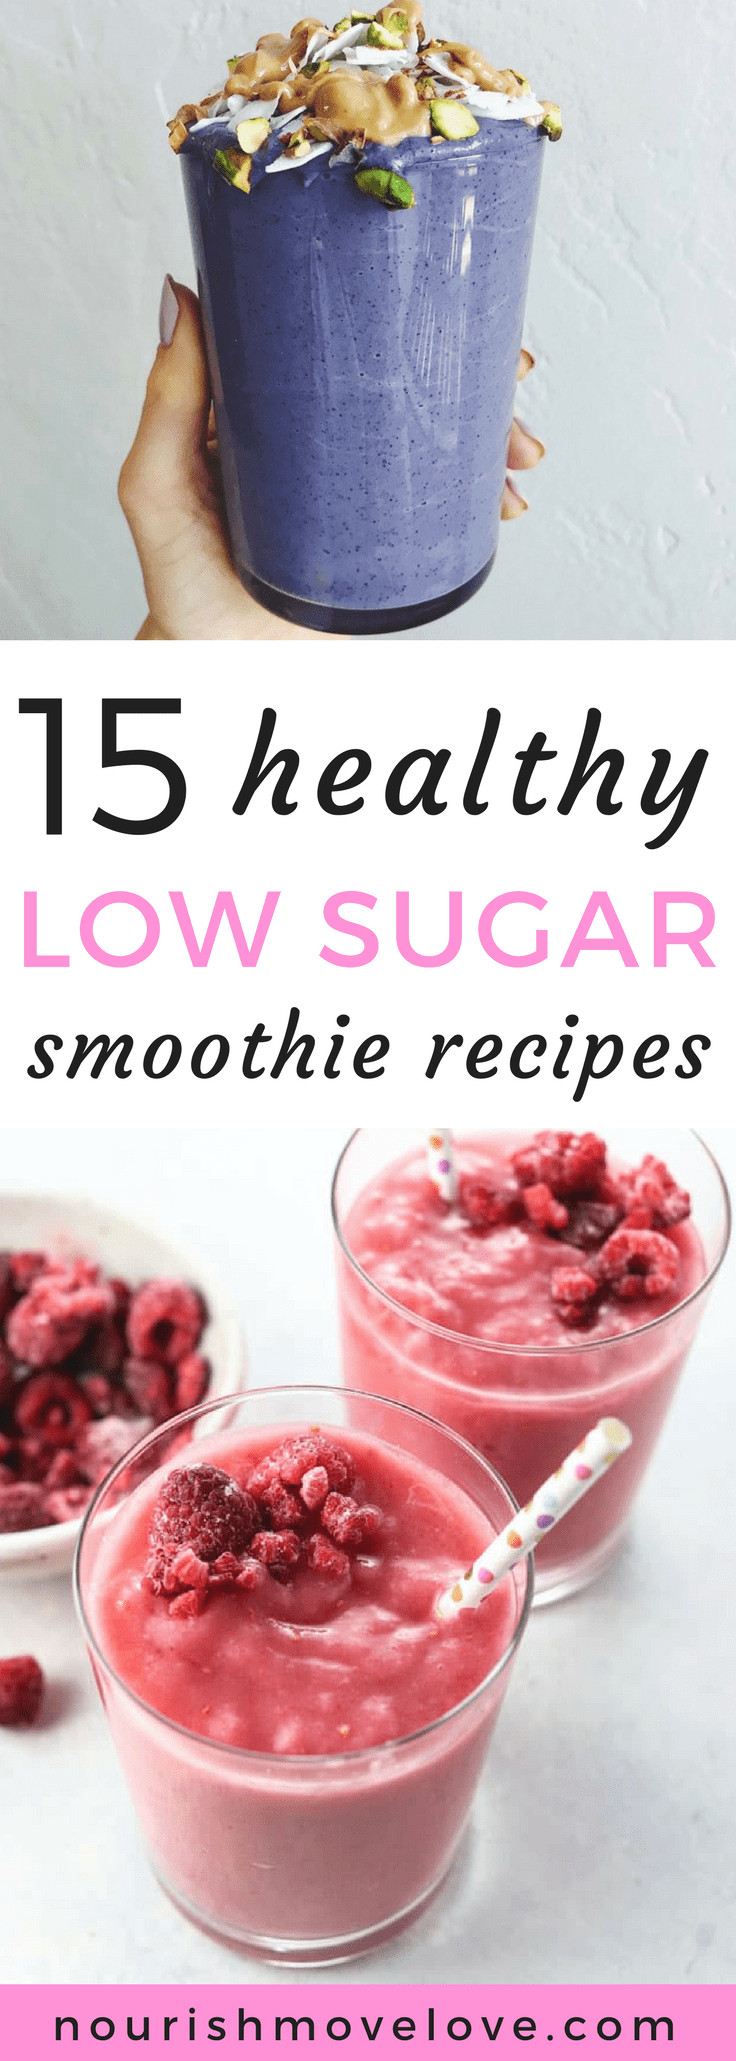 Healthy Low Sugar Smoothies
 15 Healthy Low Sugar Smoothie Recipes